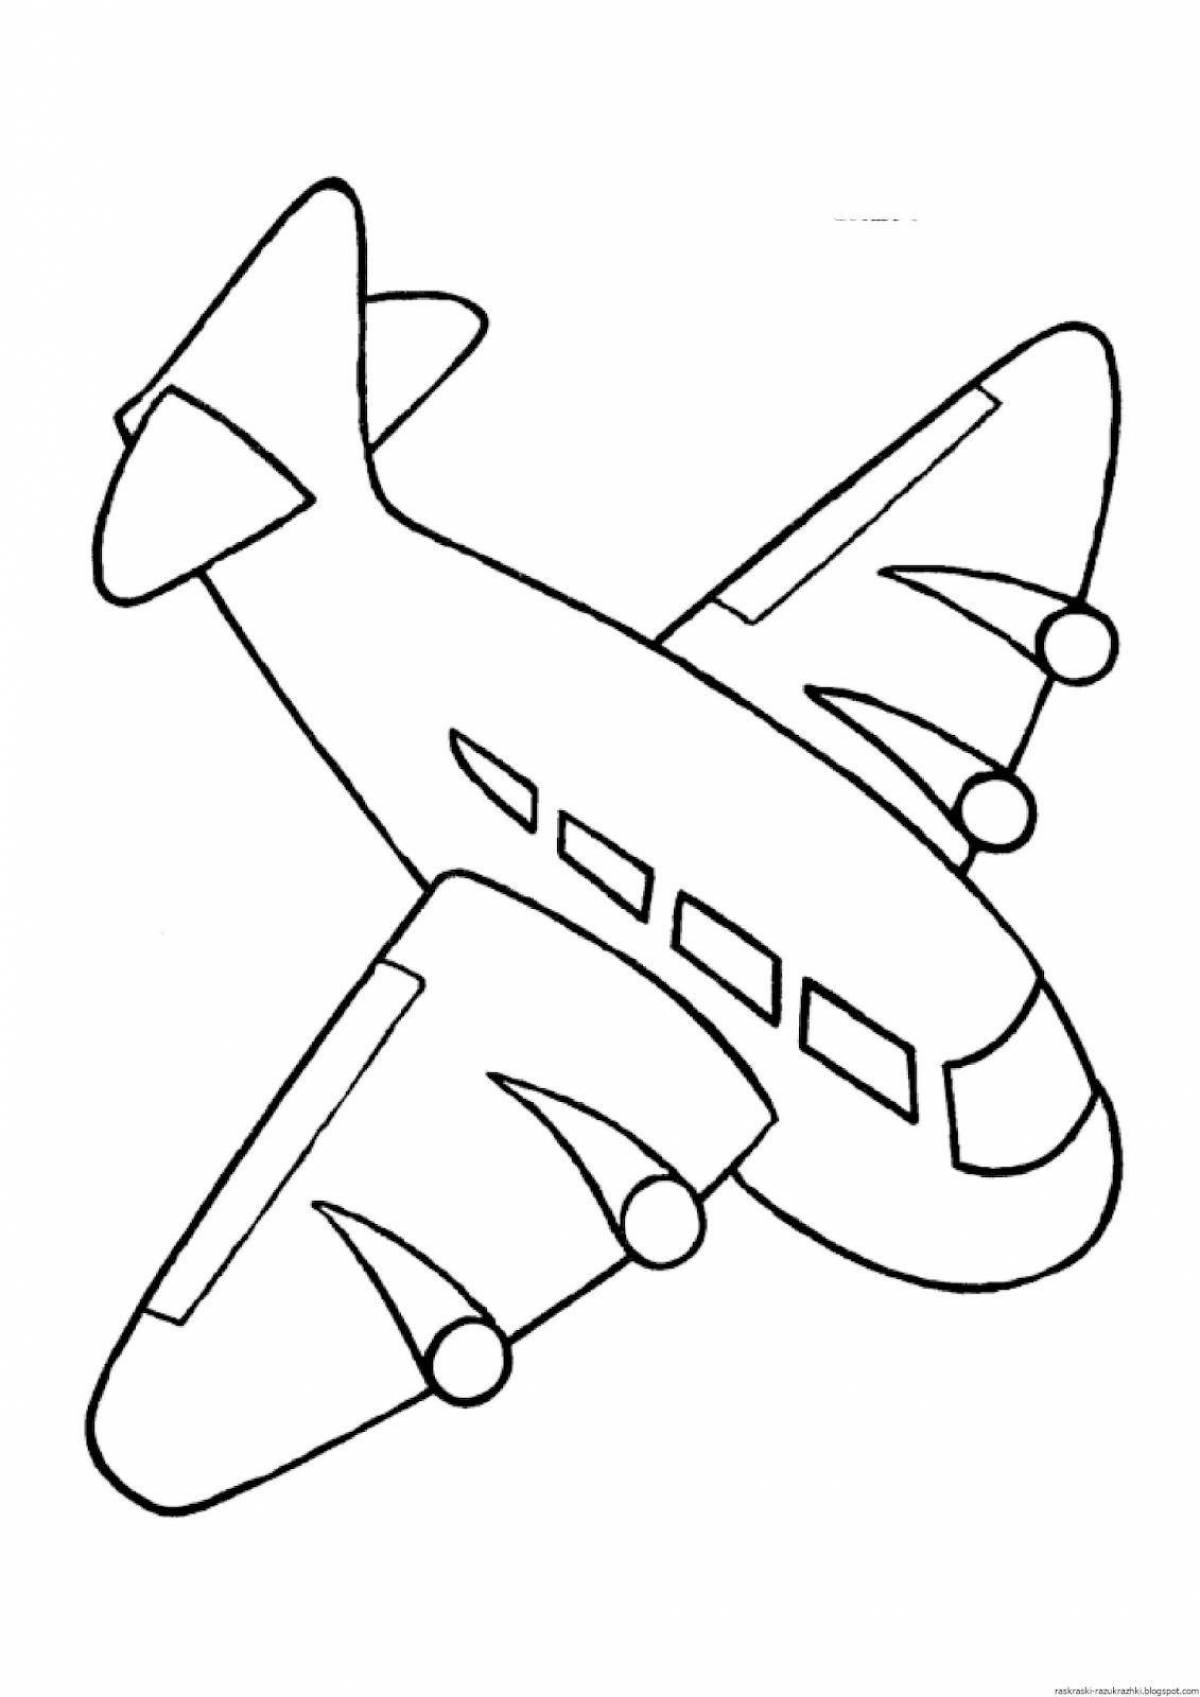 Grand plane coloring book